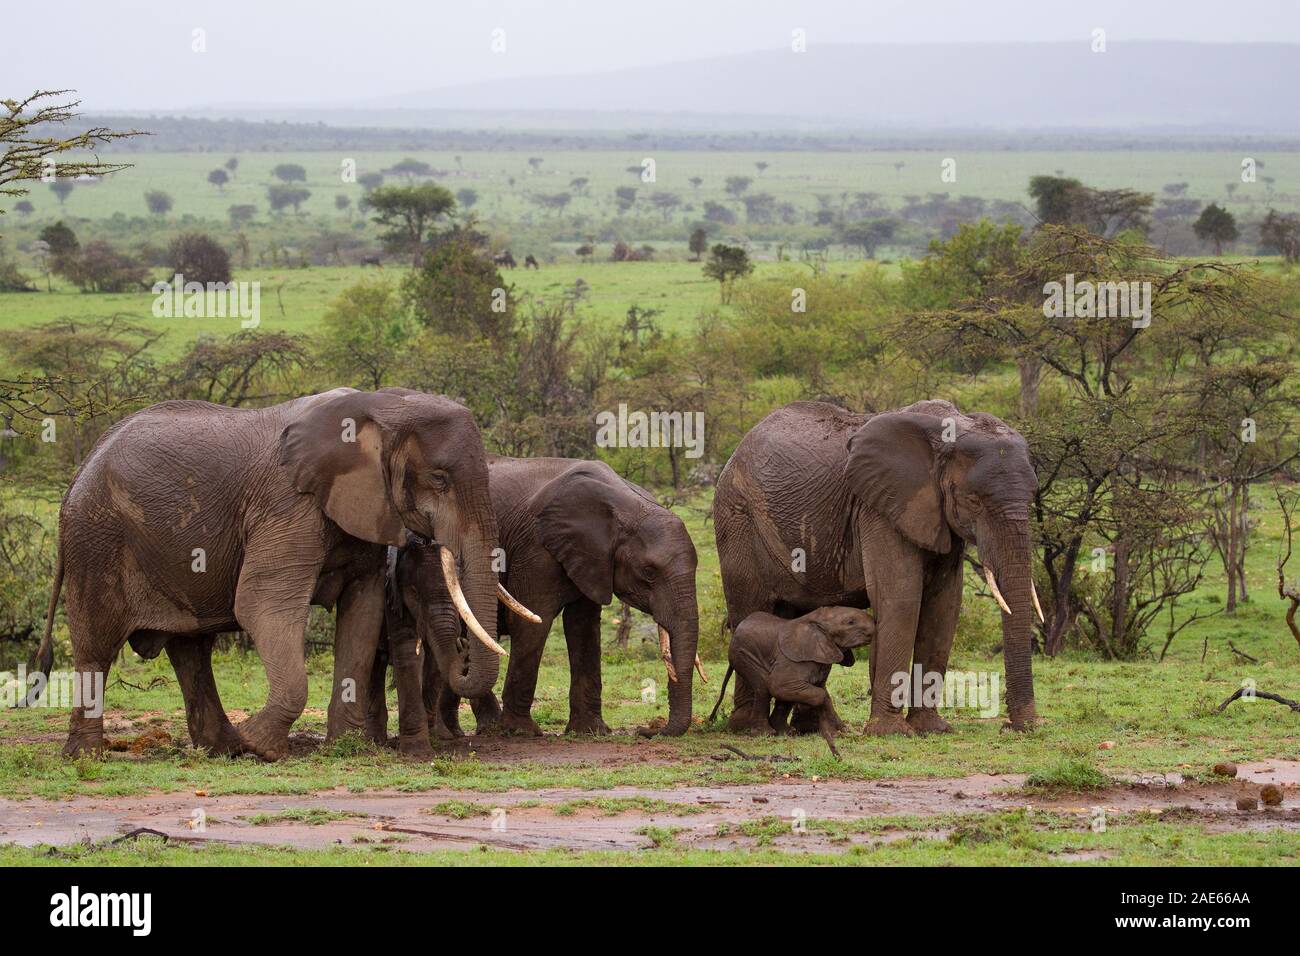 Una manada de elefantes africanos de pastoreo, justo después de una ligera llovizna Foto de stock